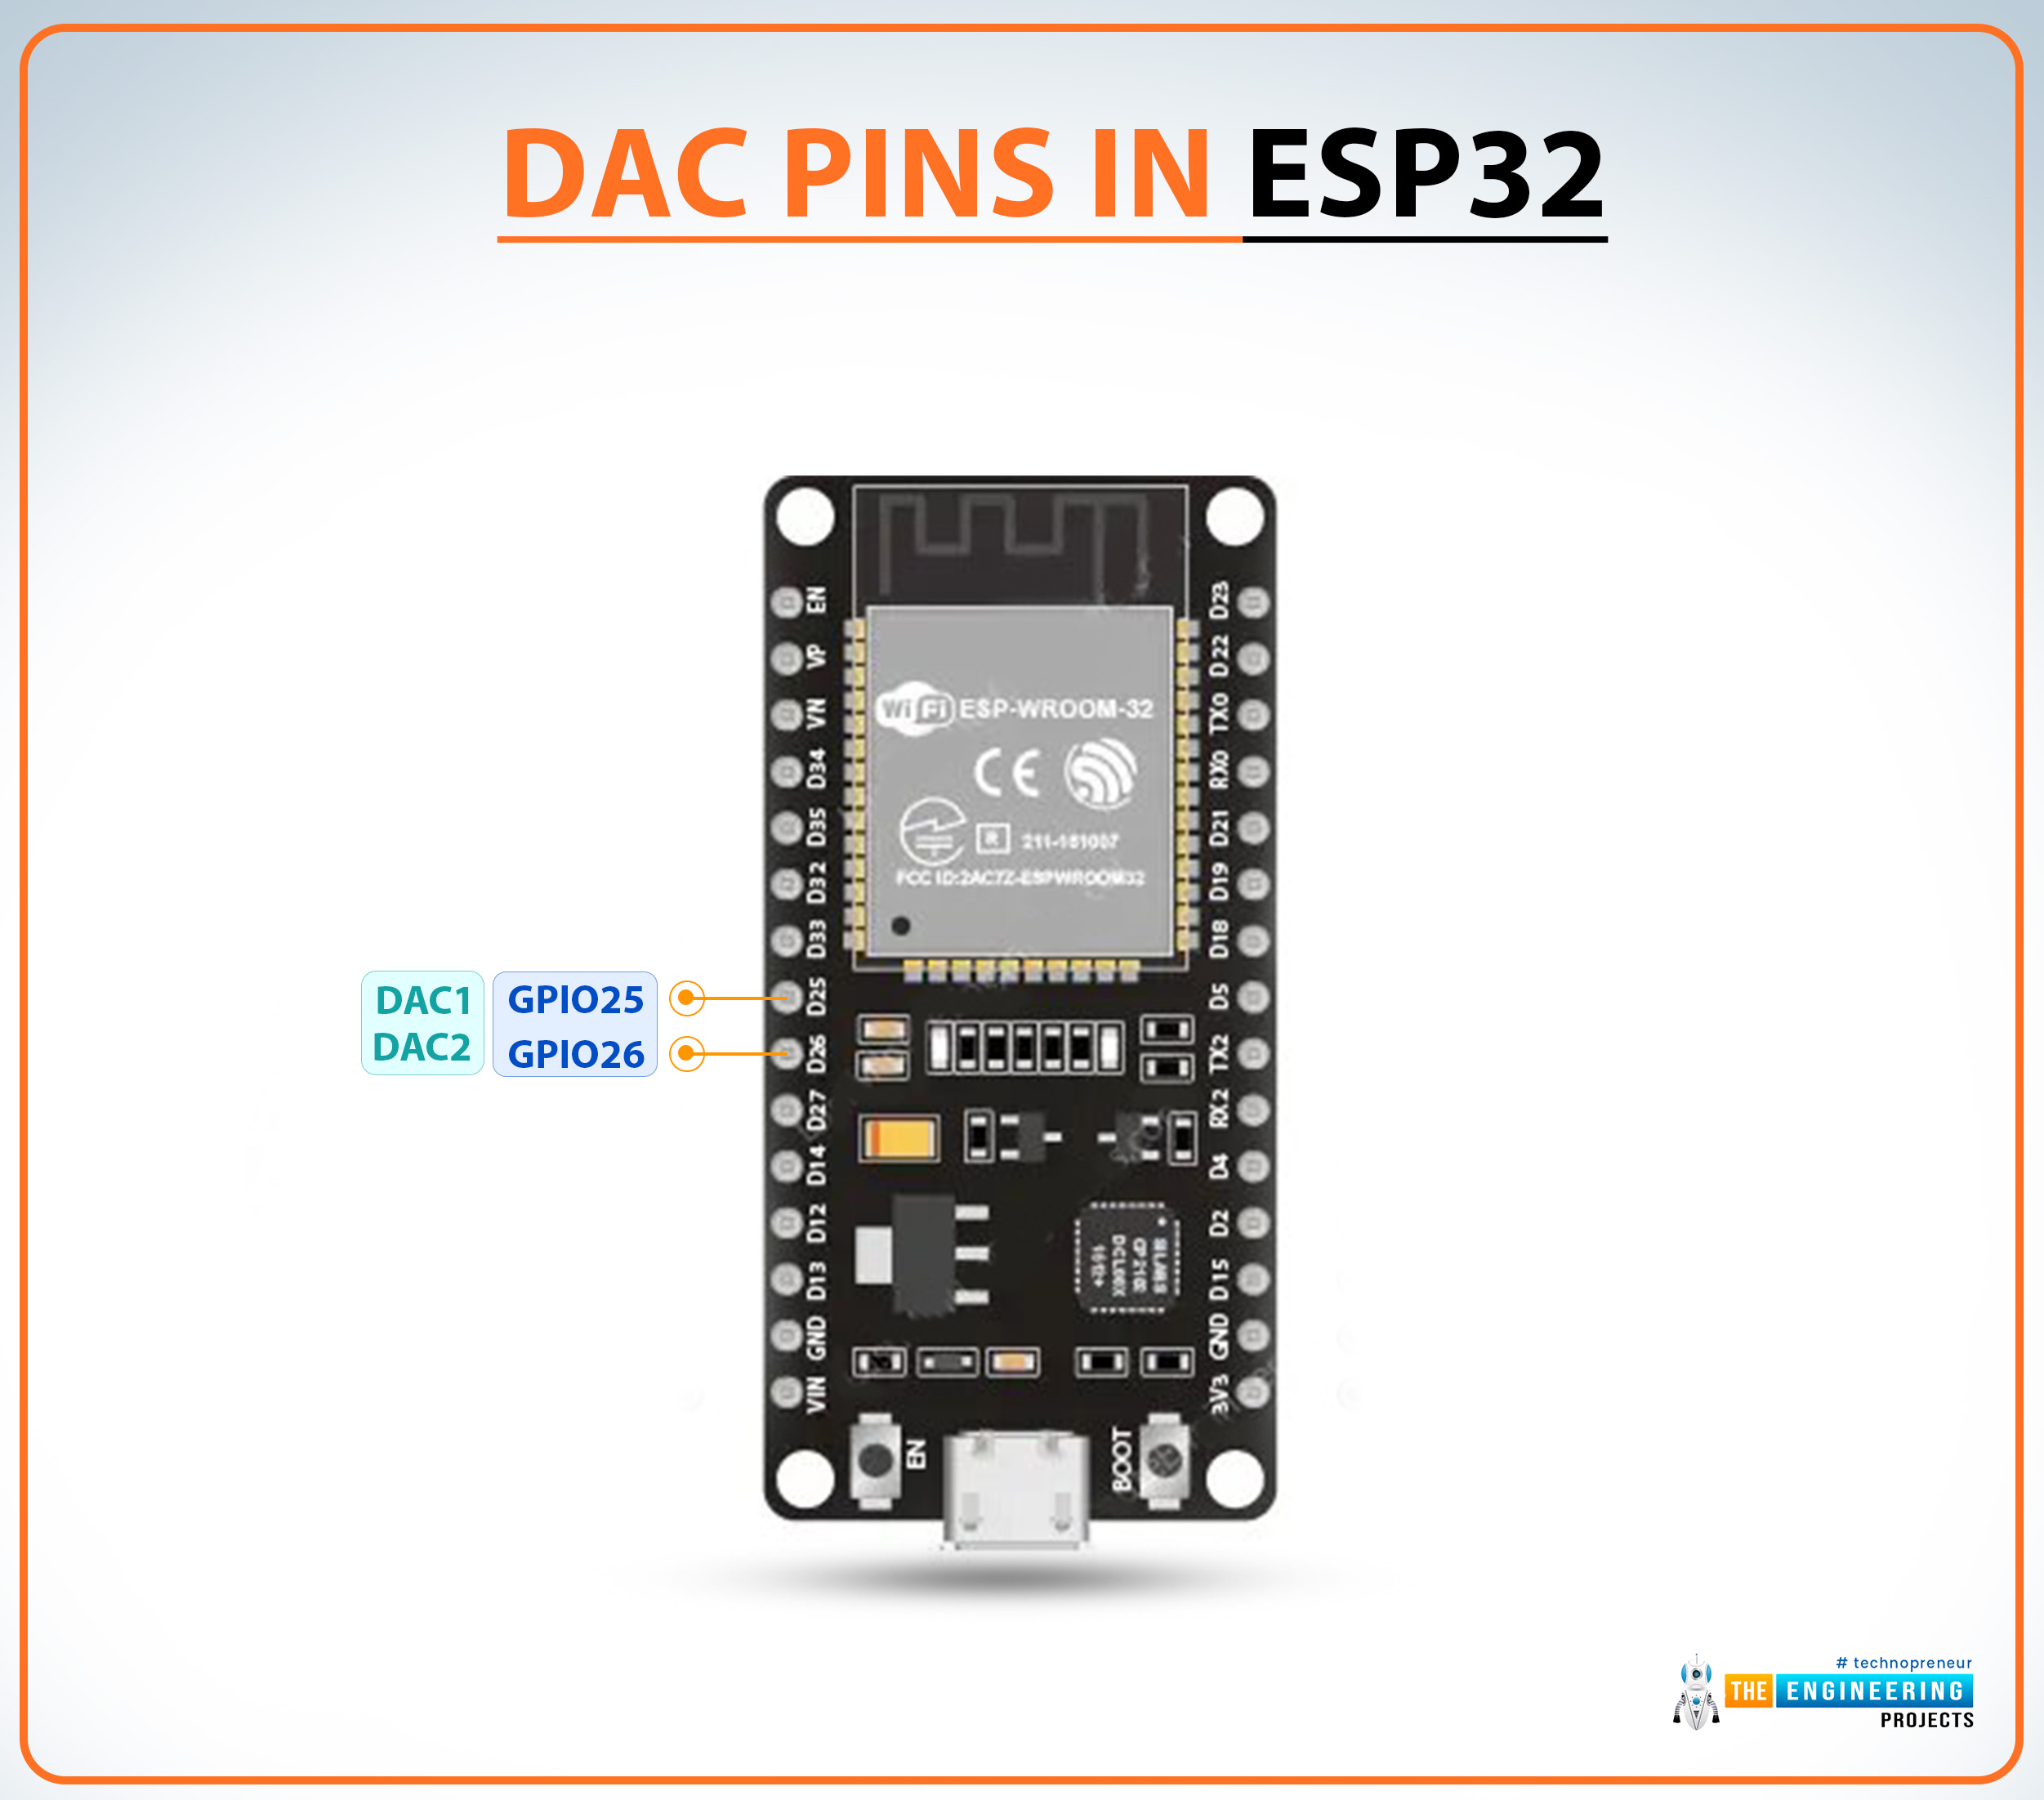 esp32, esp32 pinout, esp32 chip, esp32 wifi module, esp32 basics, esp32 featues